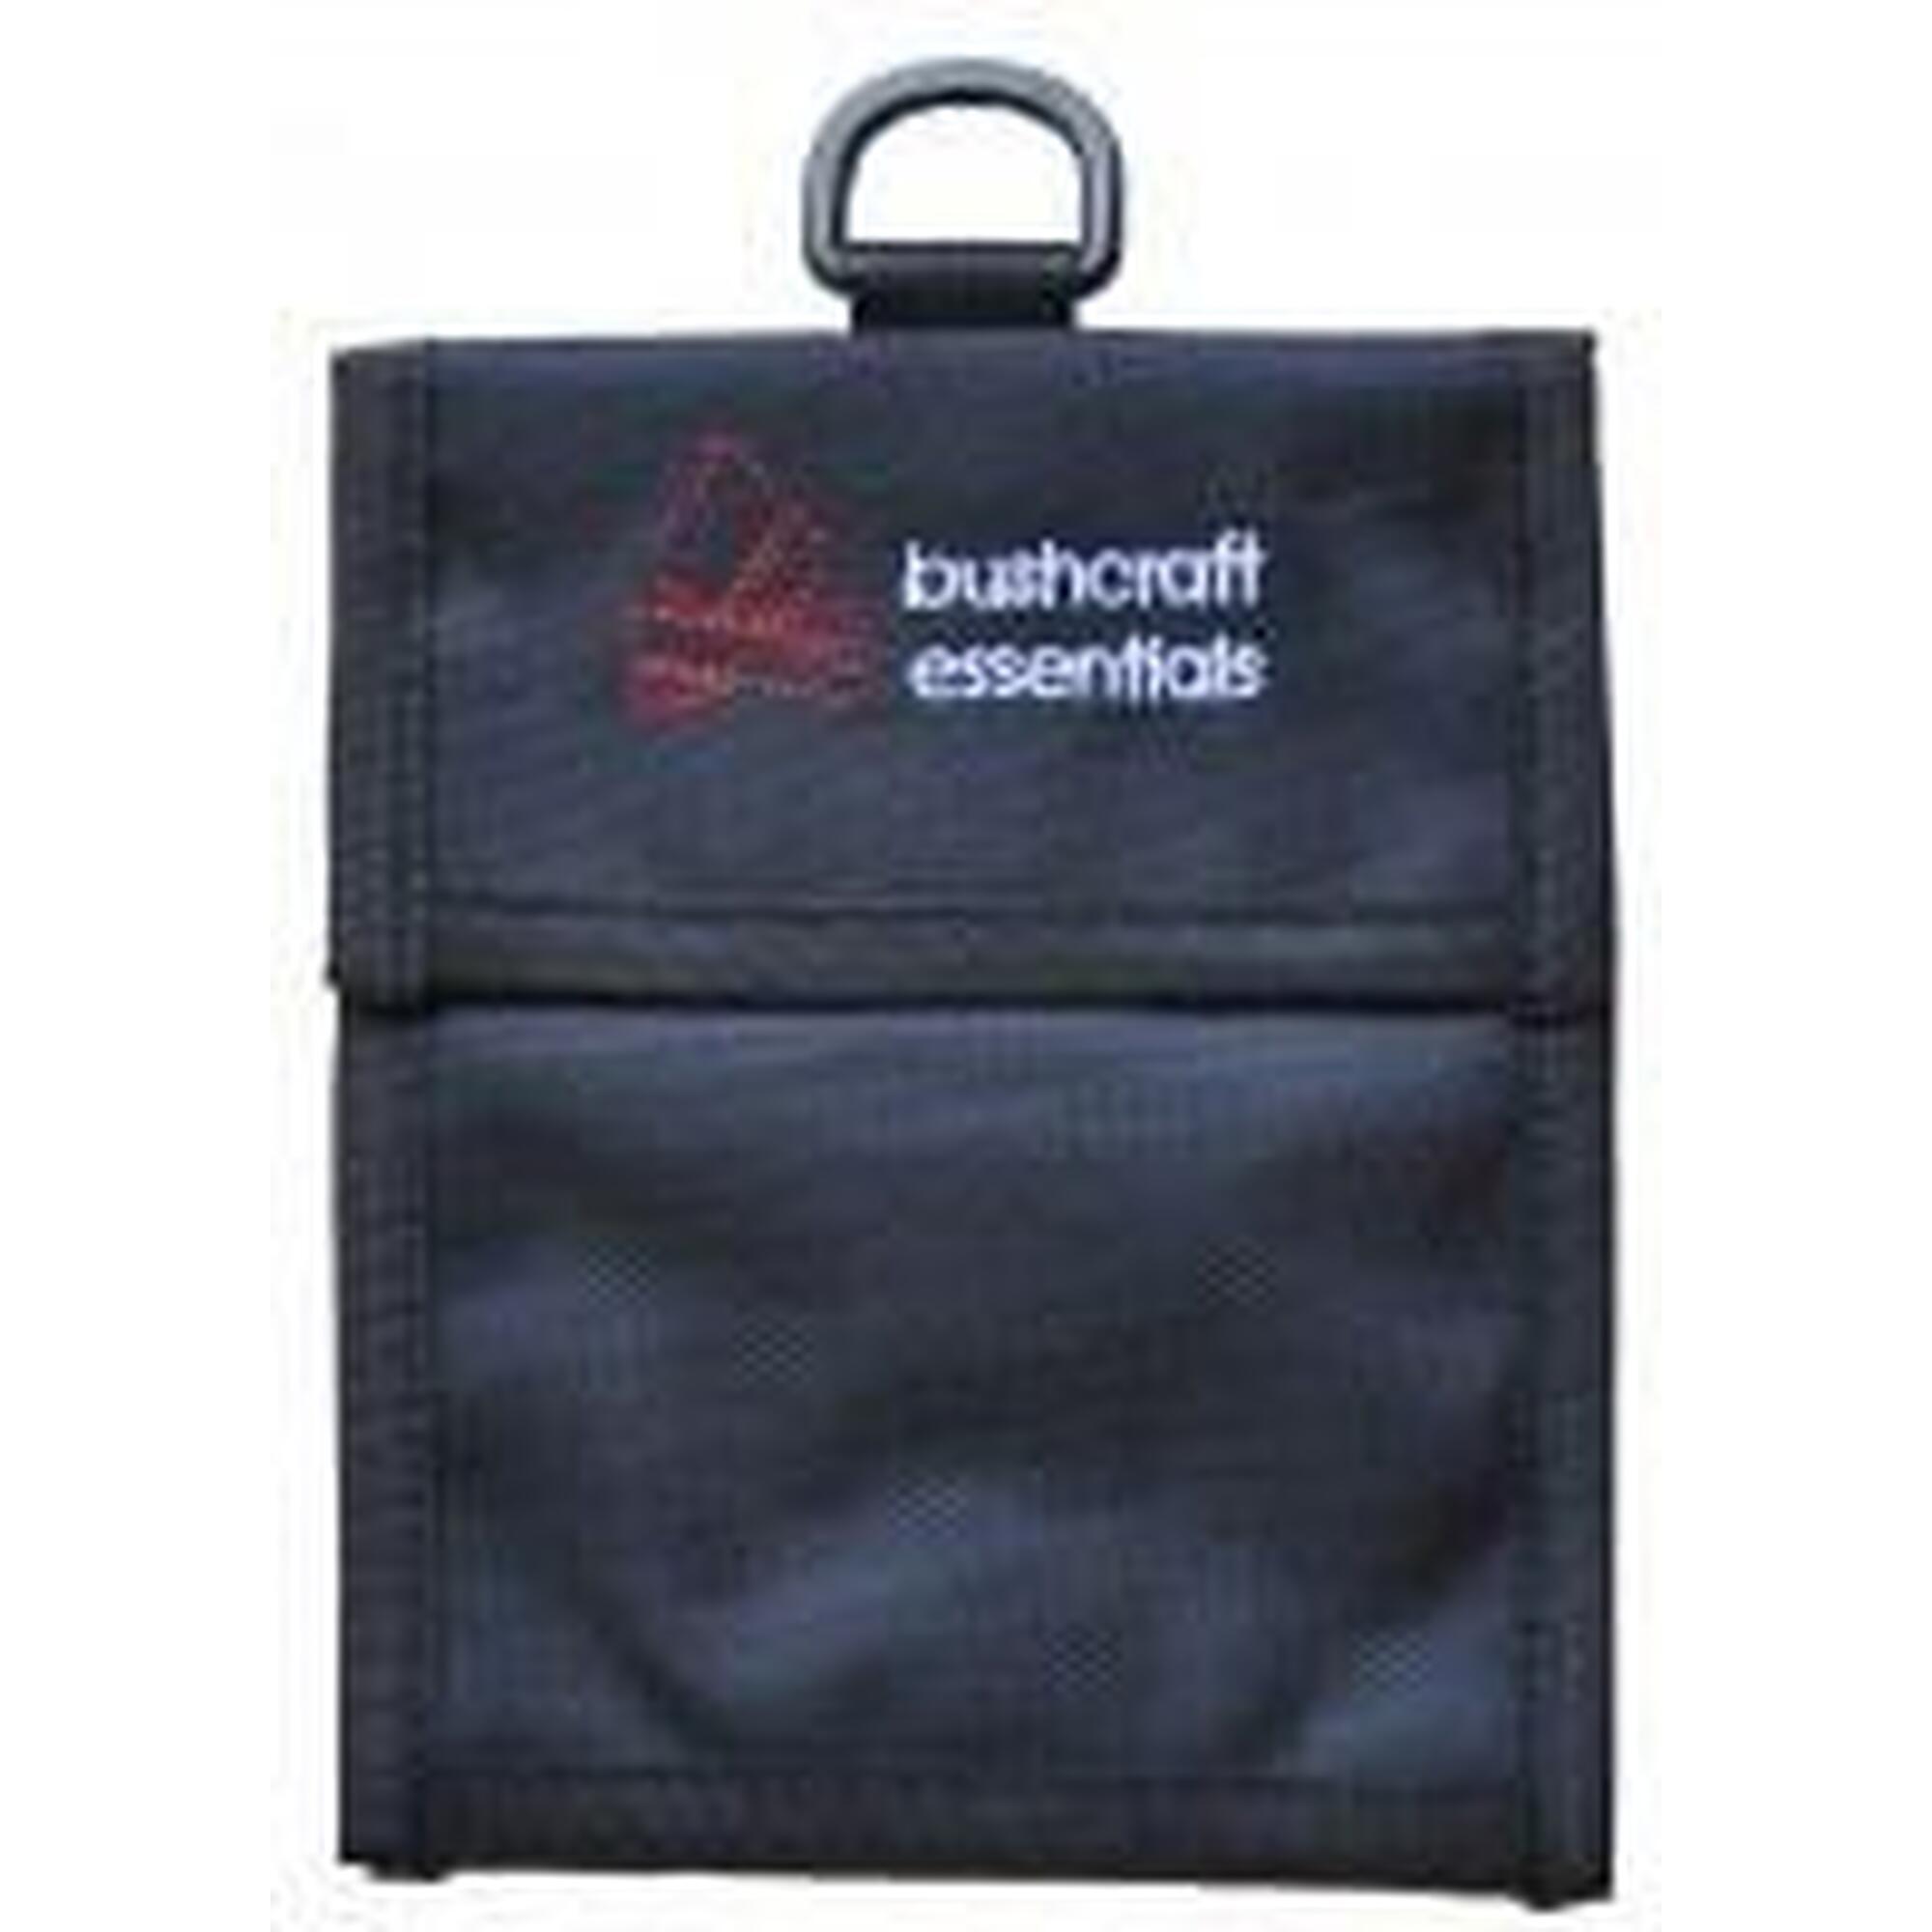 Bushcraft Essentials Heavy Duty Outdoor Bag Bushbox / Bushbox TI / Bushbox UL